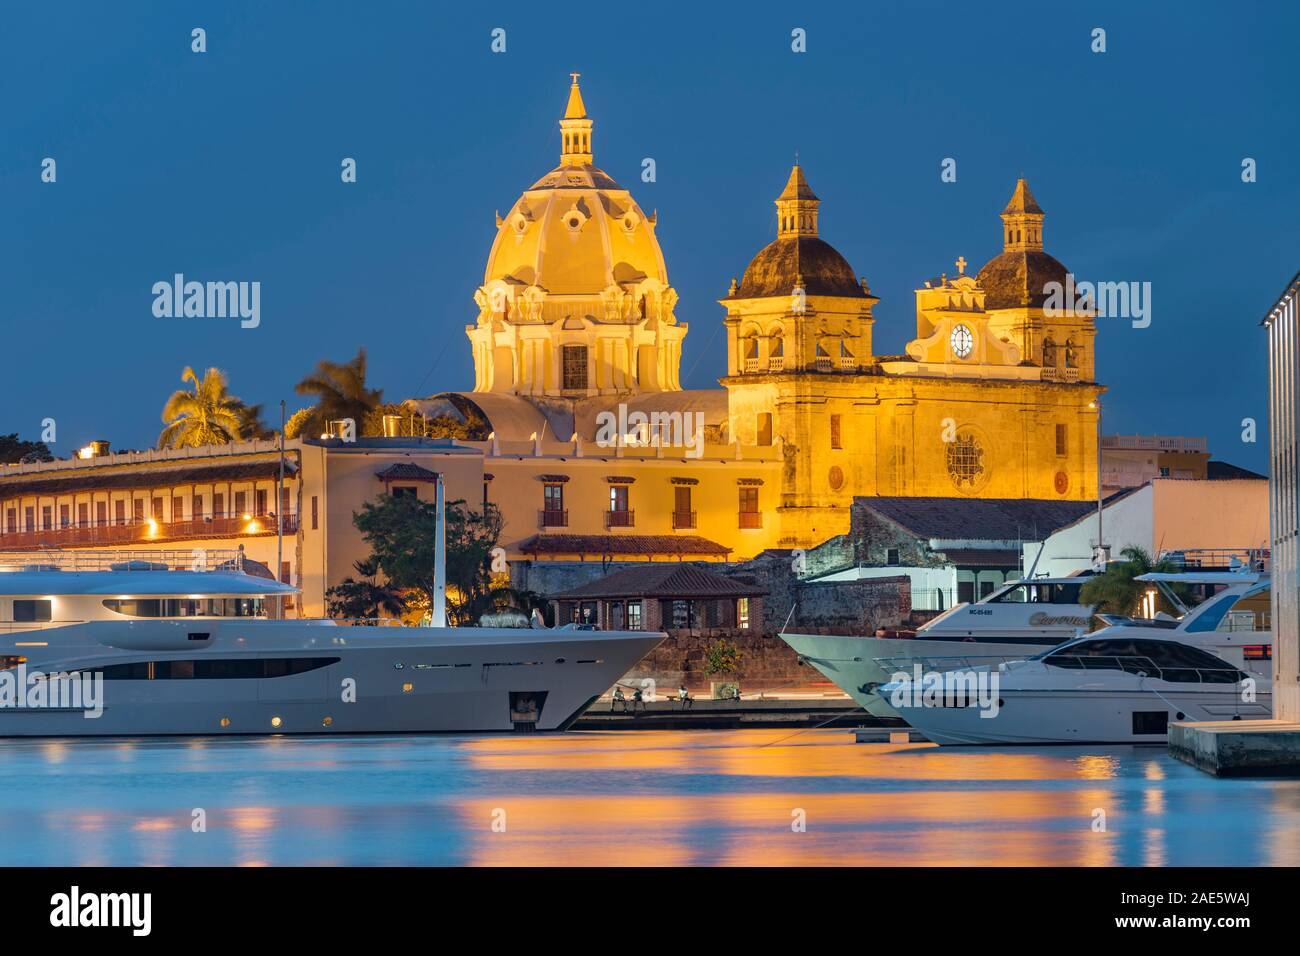 Crépuscule vue de bateaux amarrés aux côtés les bâtiments historiques de la vieille ville fortifiée de Cartagena en Colombie. Banque D'Images